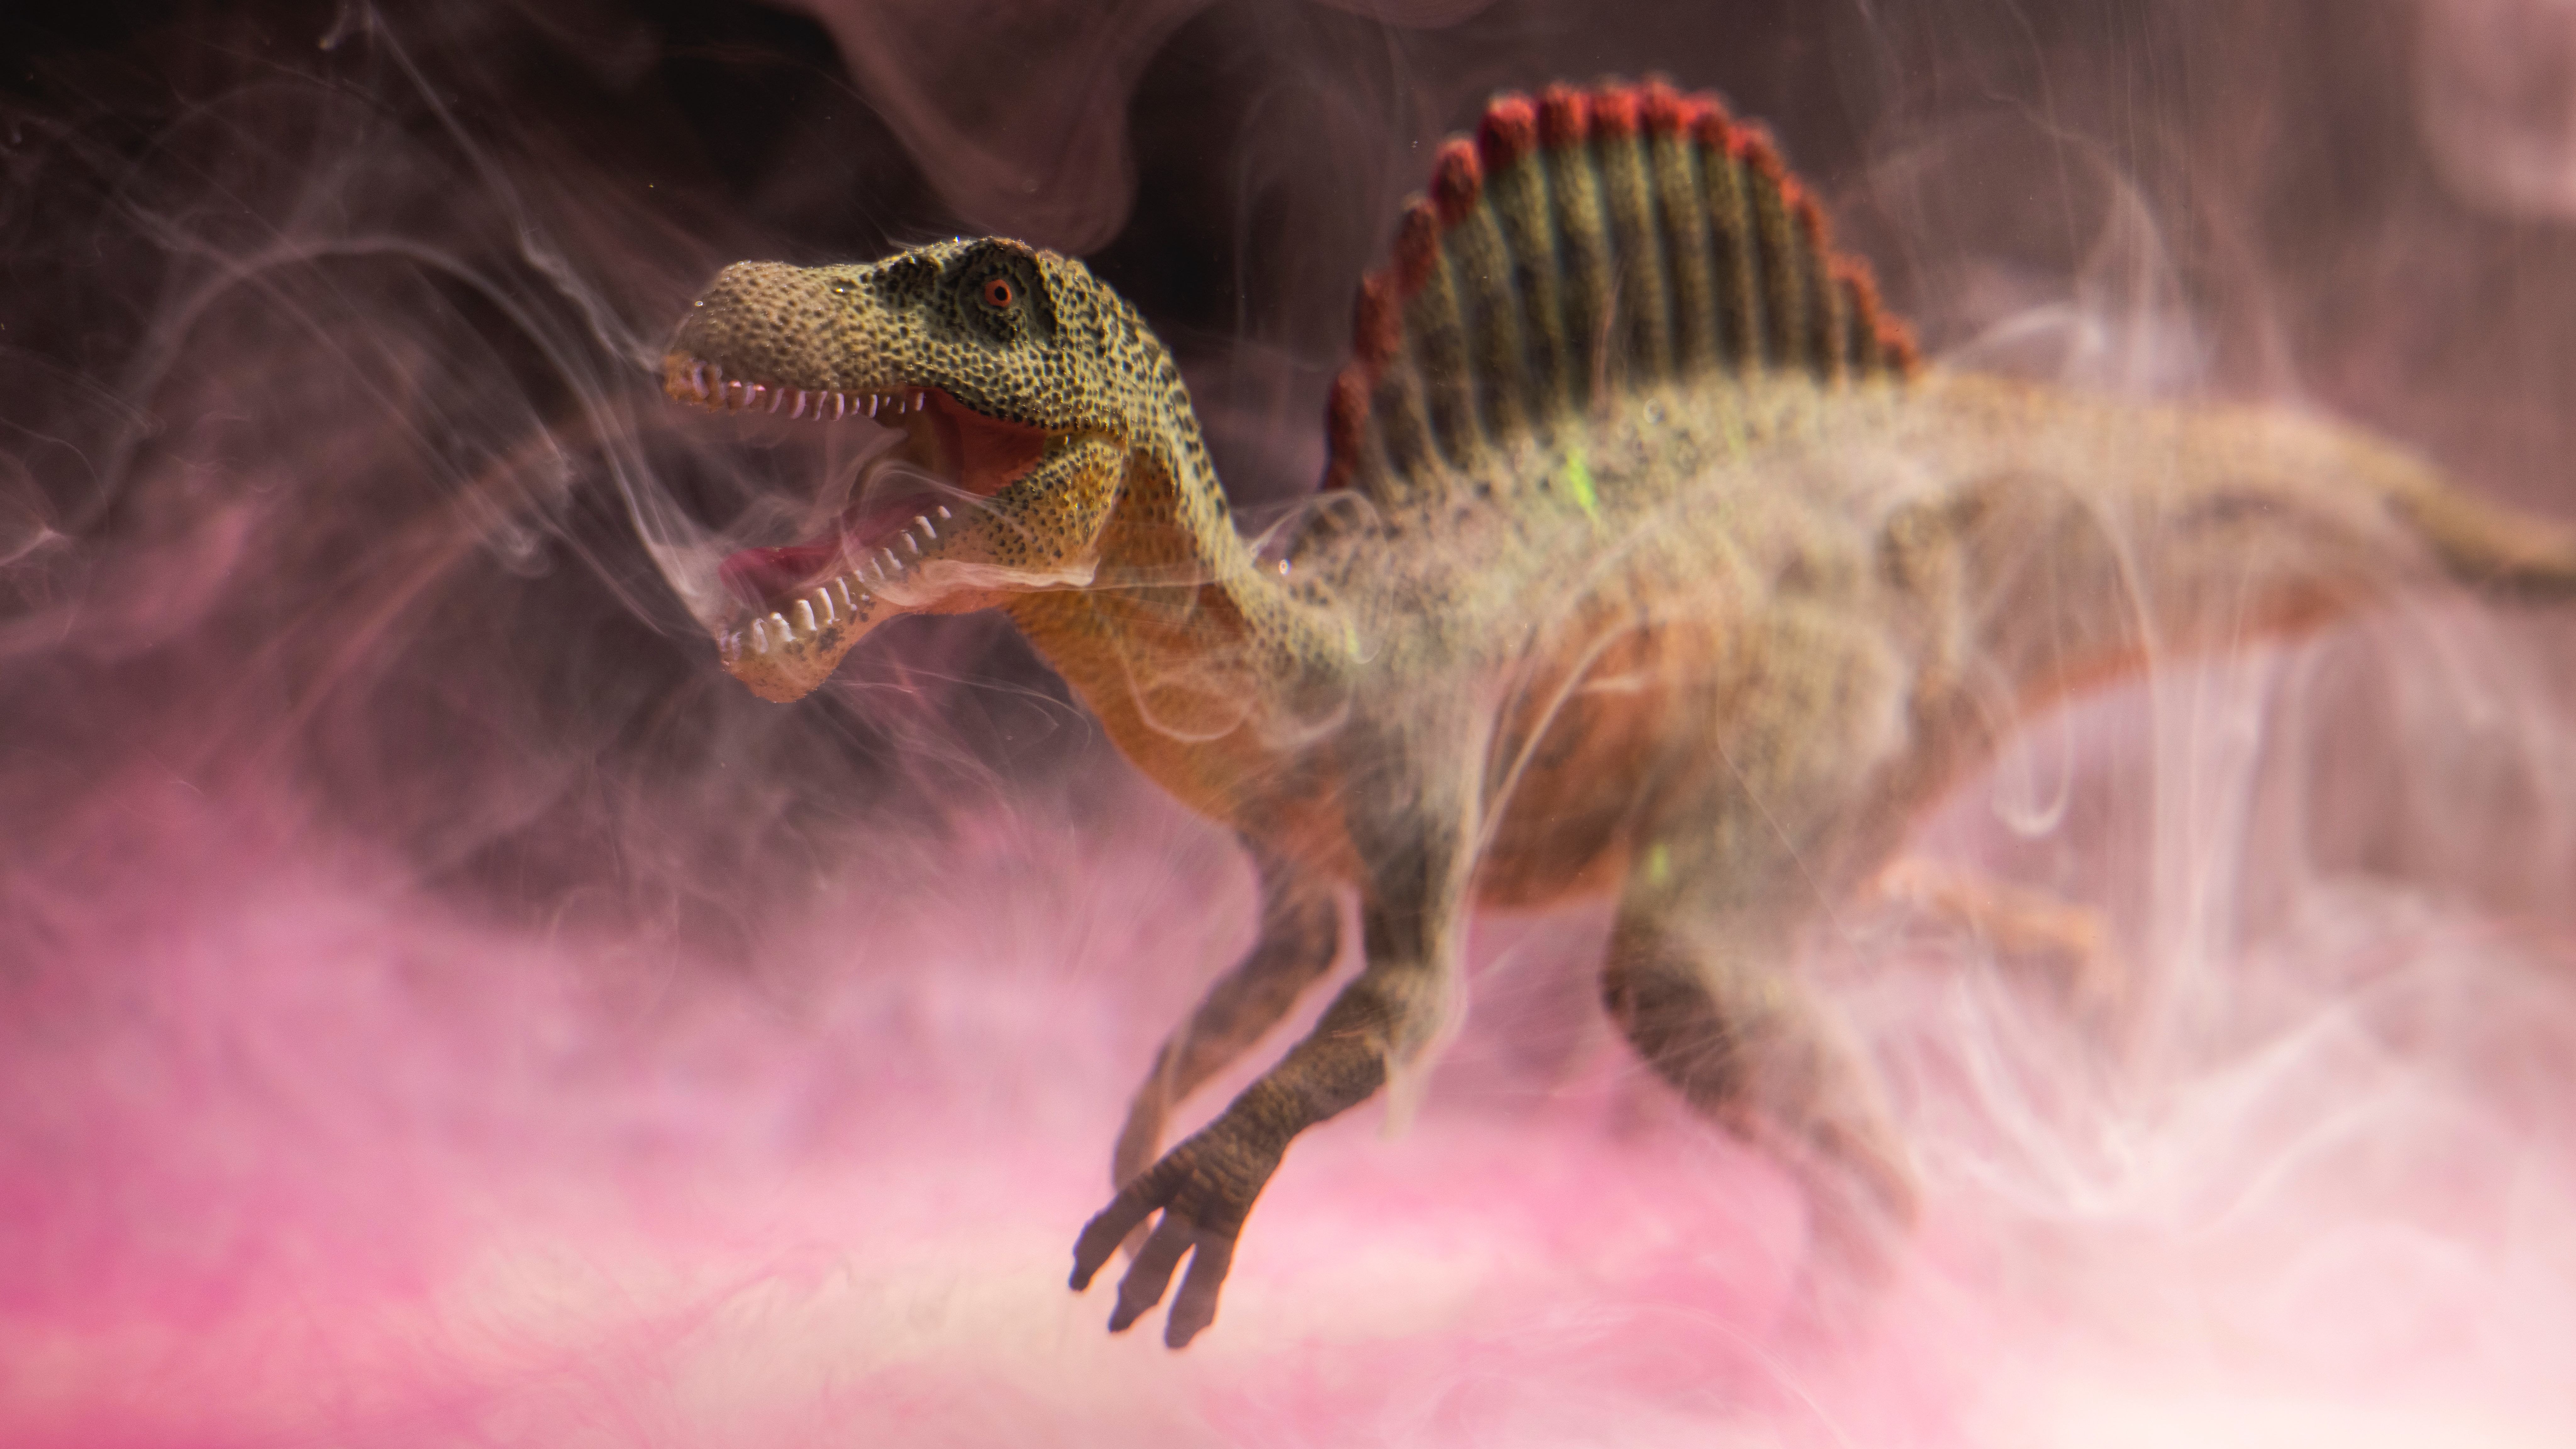 A misteriosa vida sexual dos dinossauros